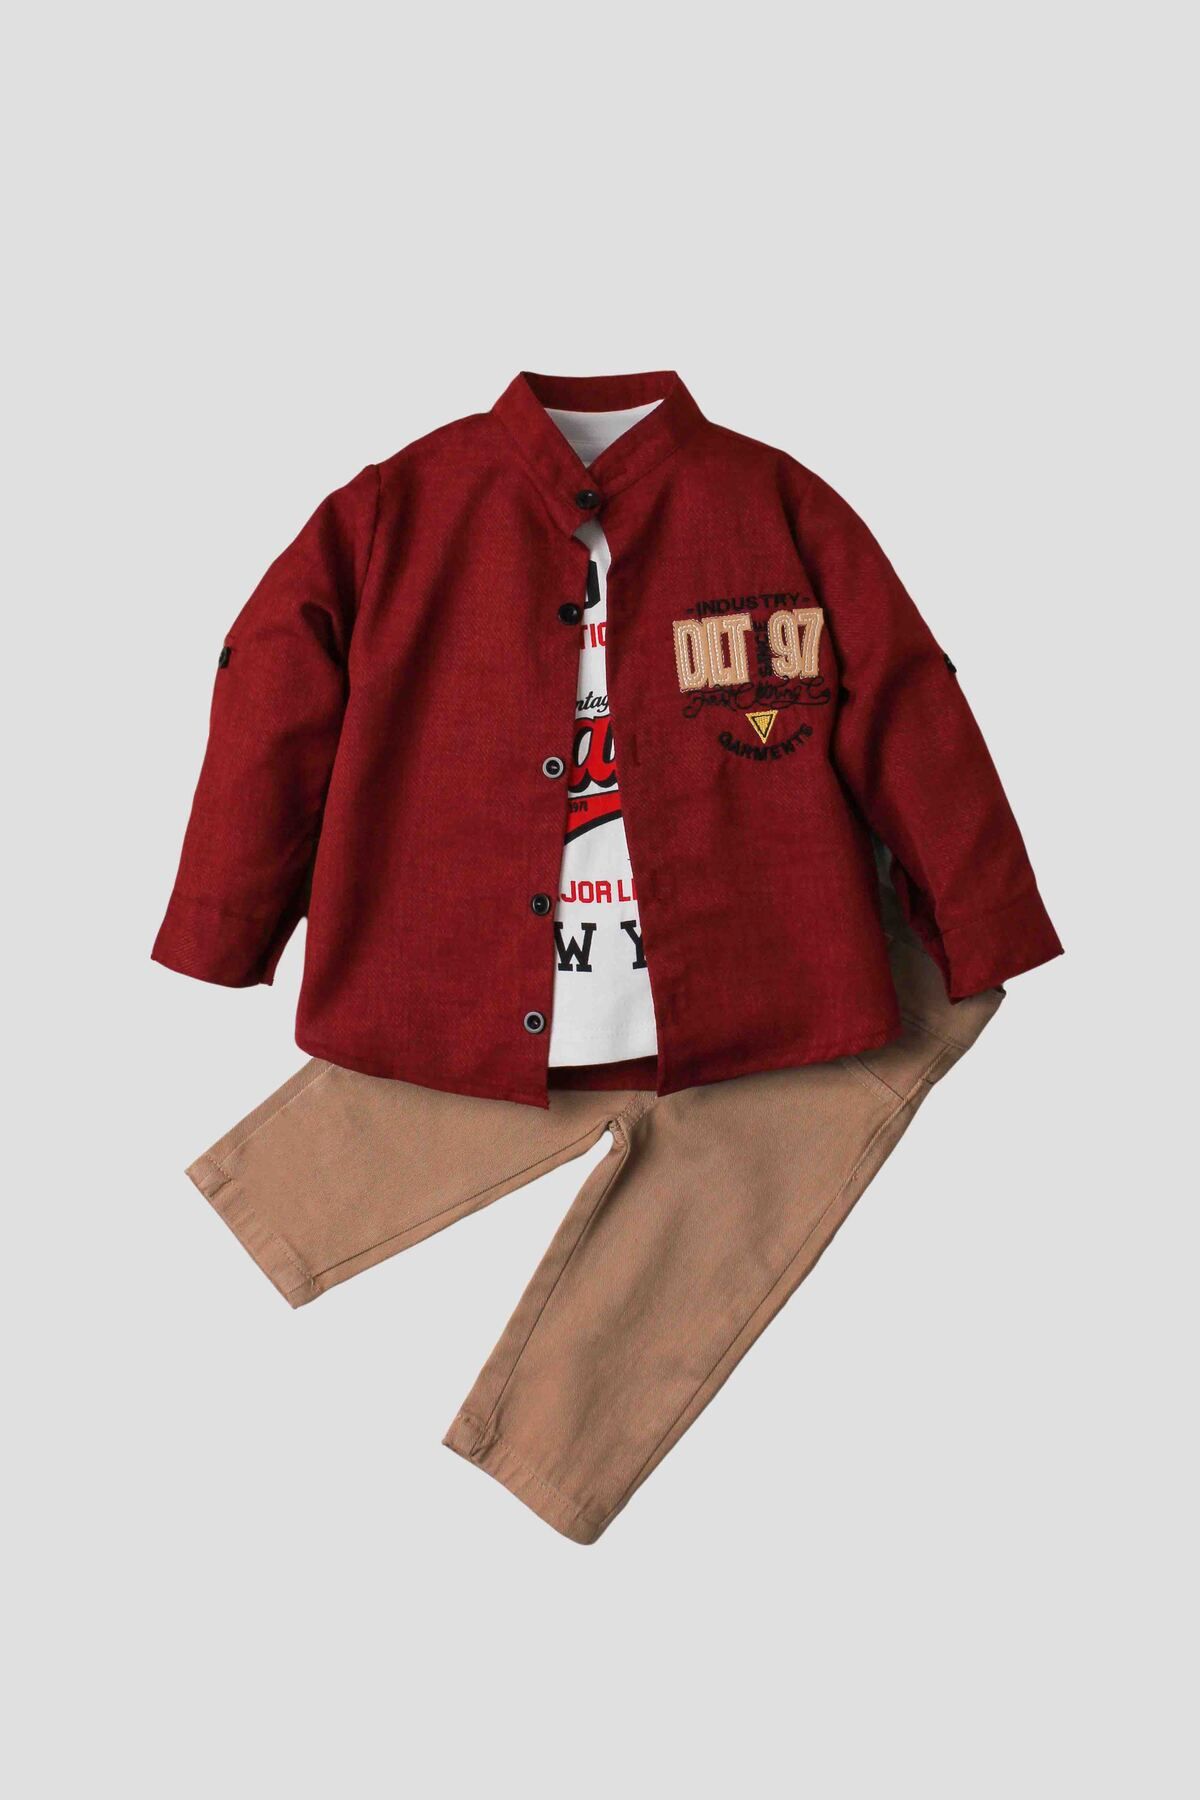 Kidex’s Baby Erkek bebek spor gömlek takım kot pantolon üst sweatshirt üçlü takım pamuklu